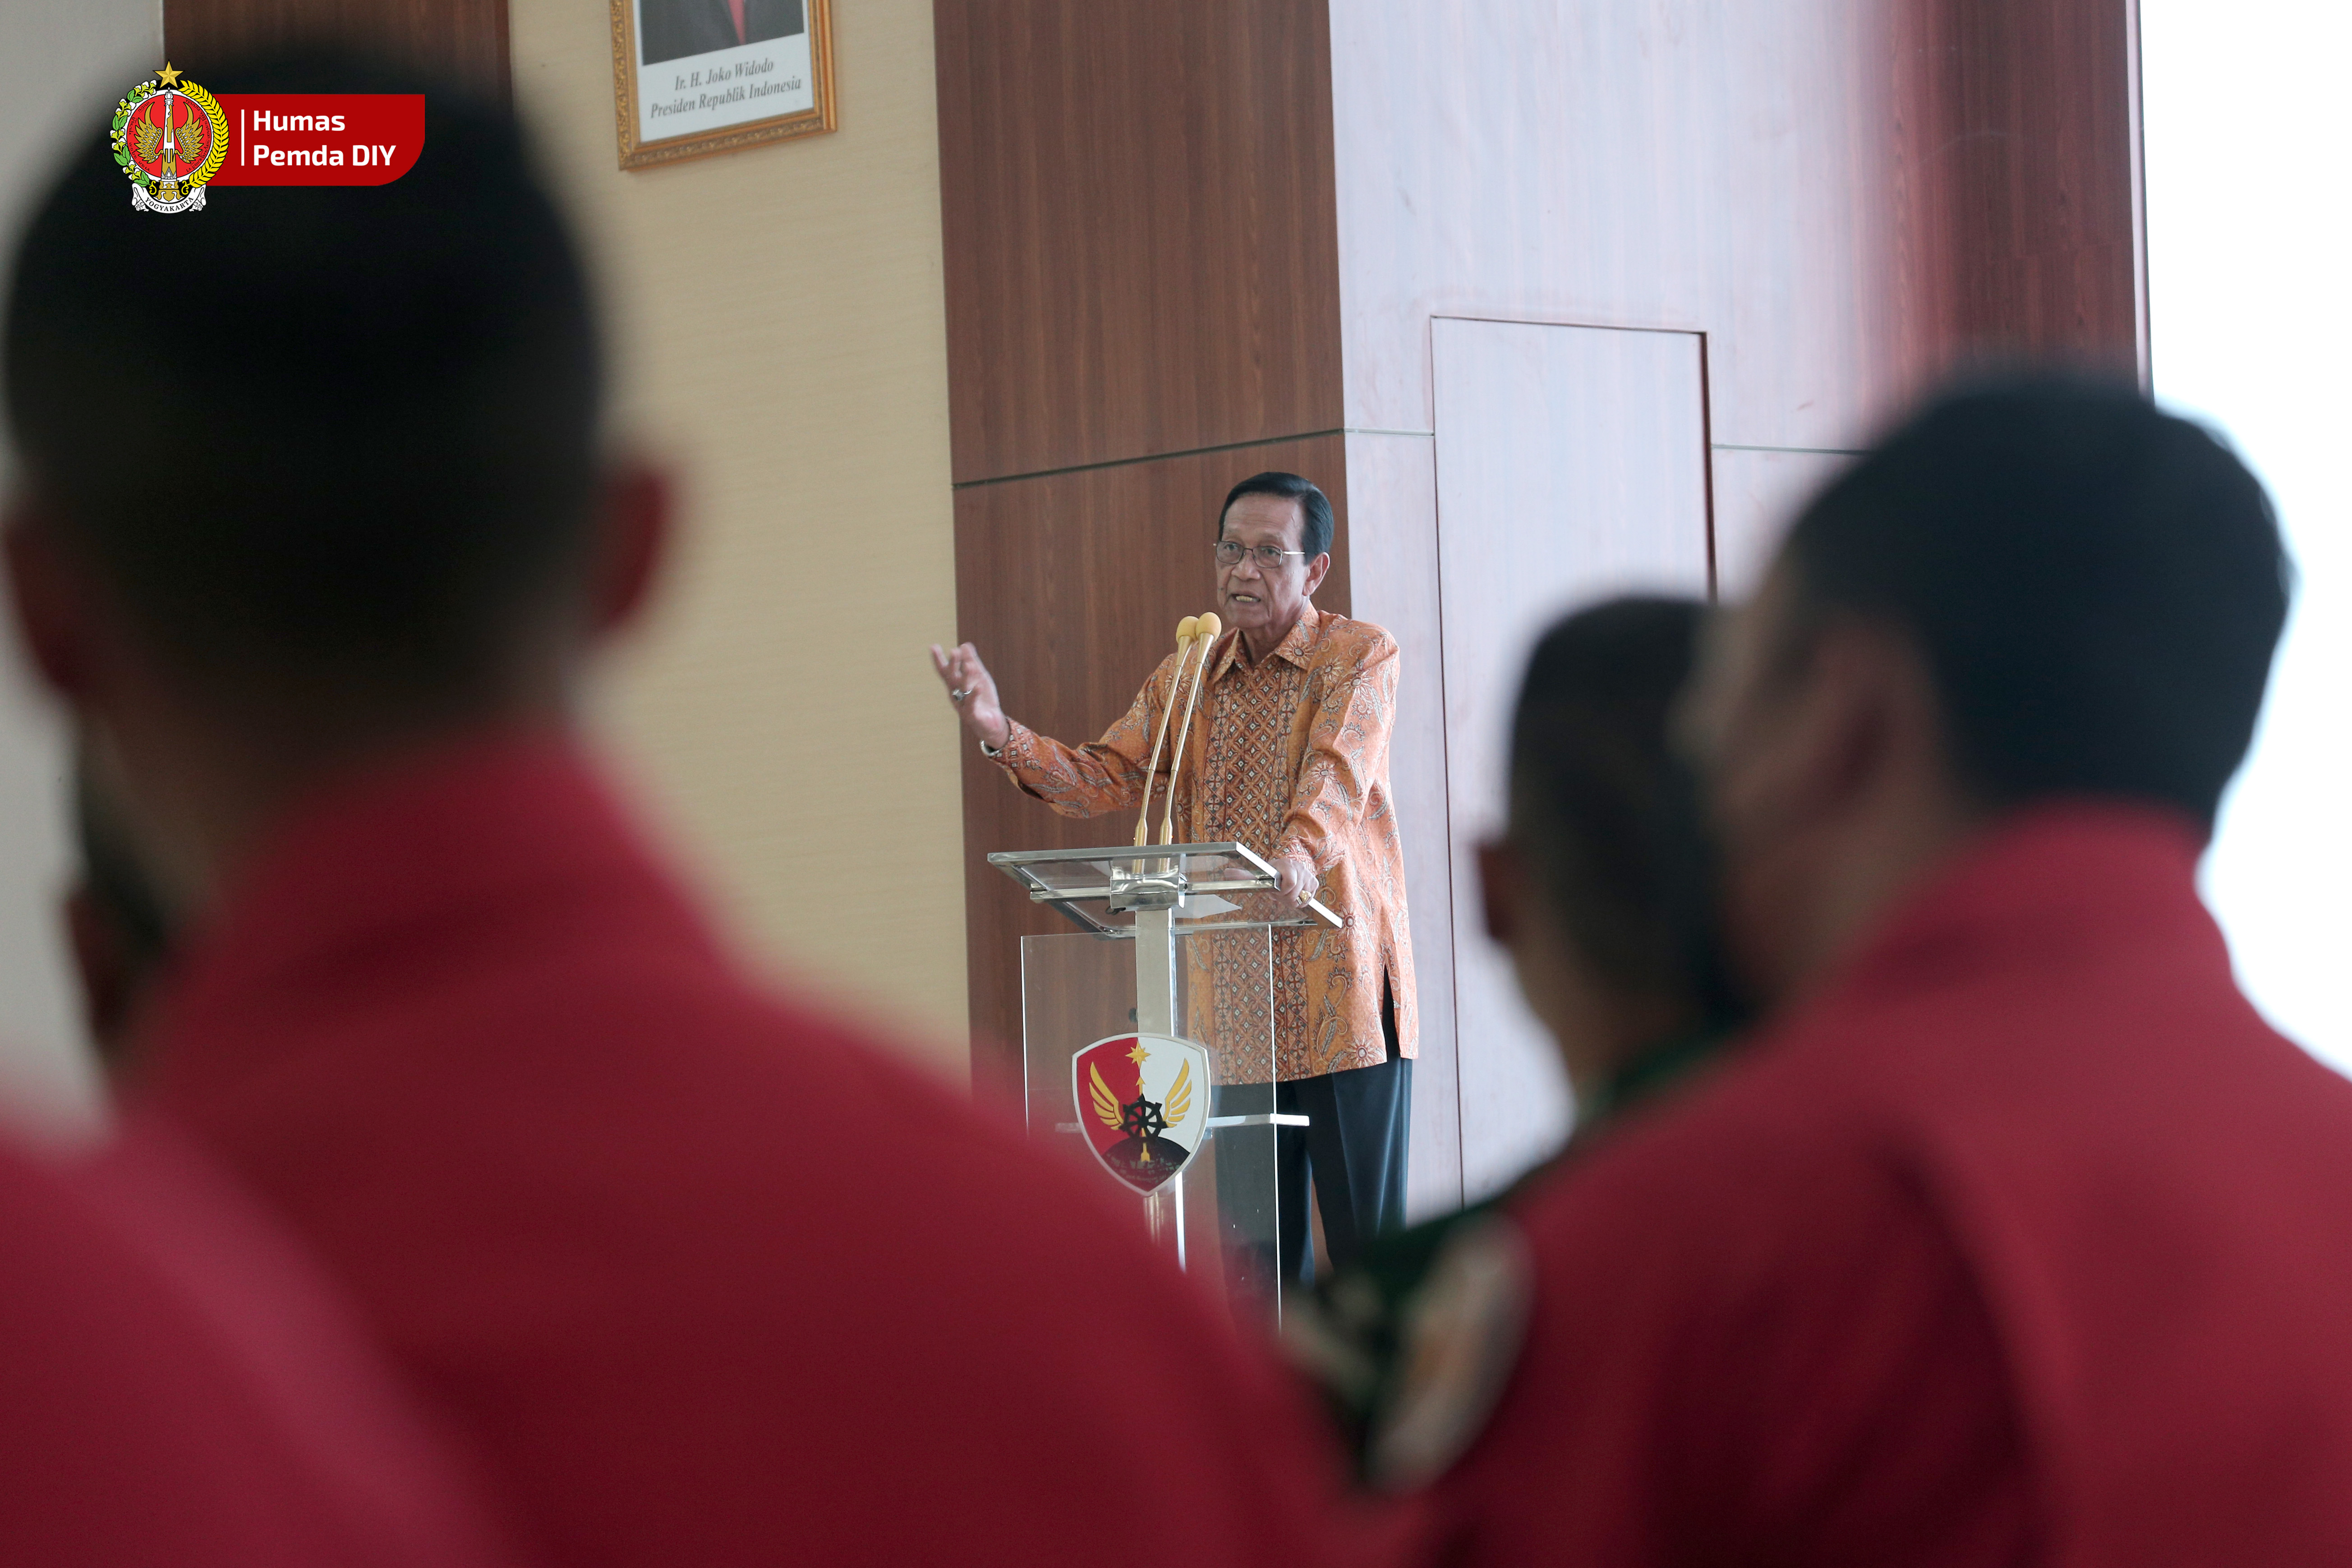  Penjaga Dirgantara Indonesia Wajib Memiliki Komitmen Abadi dengan NKRI